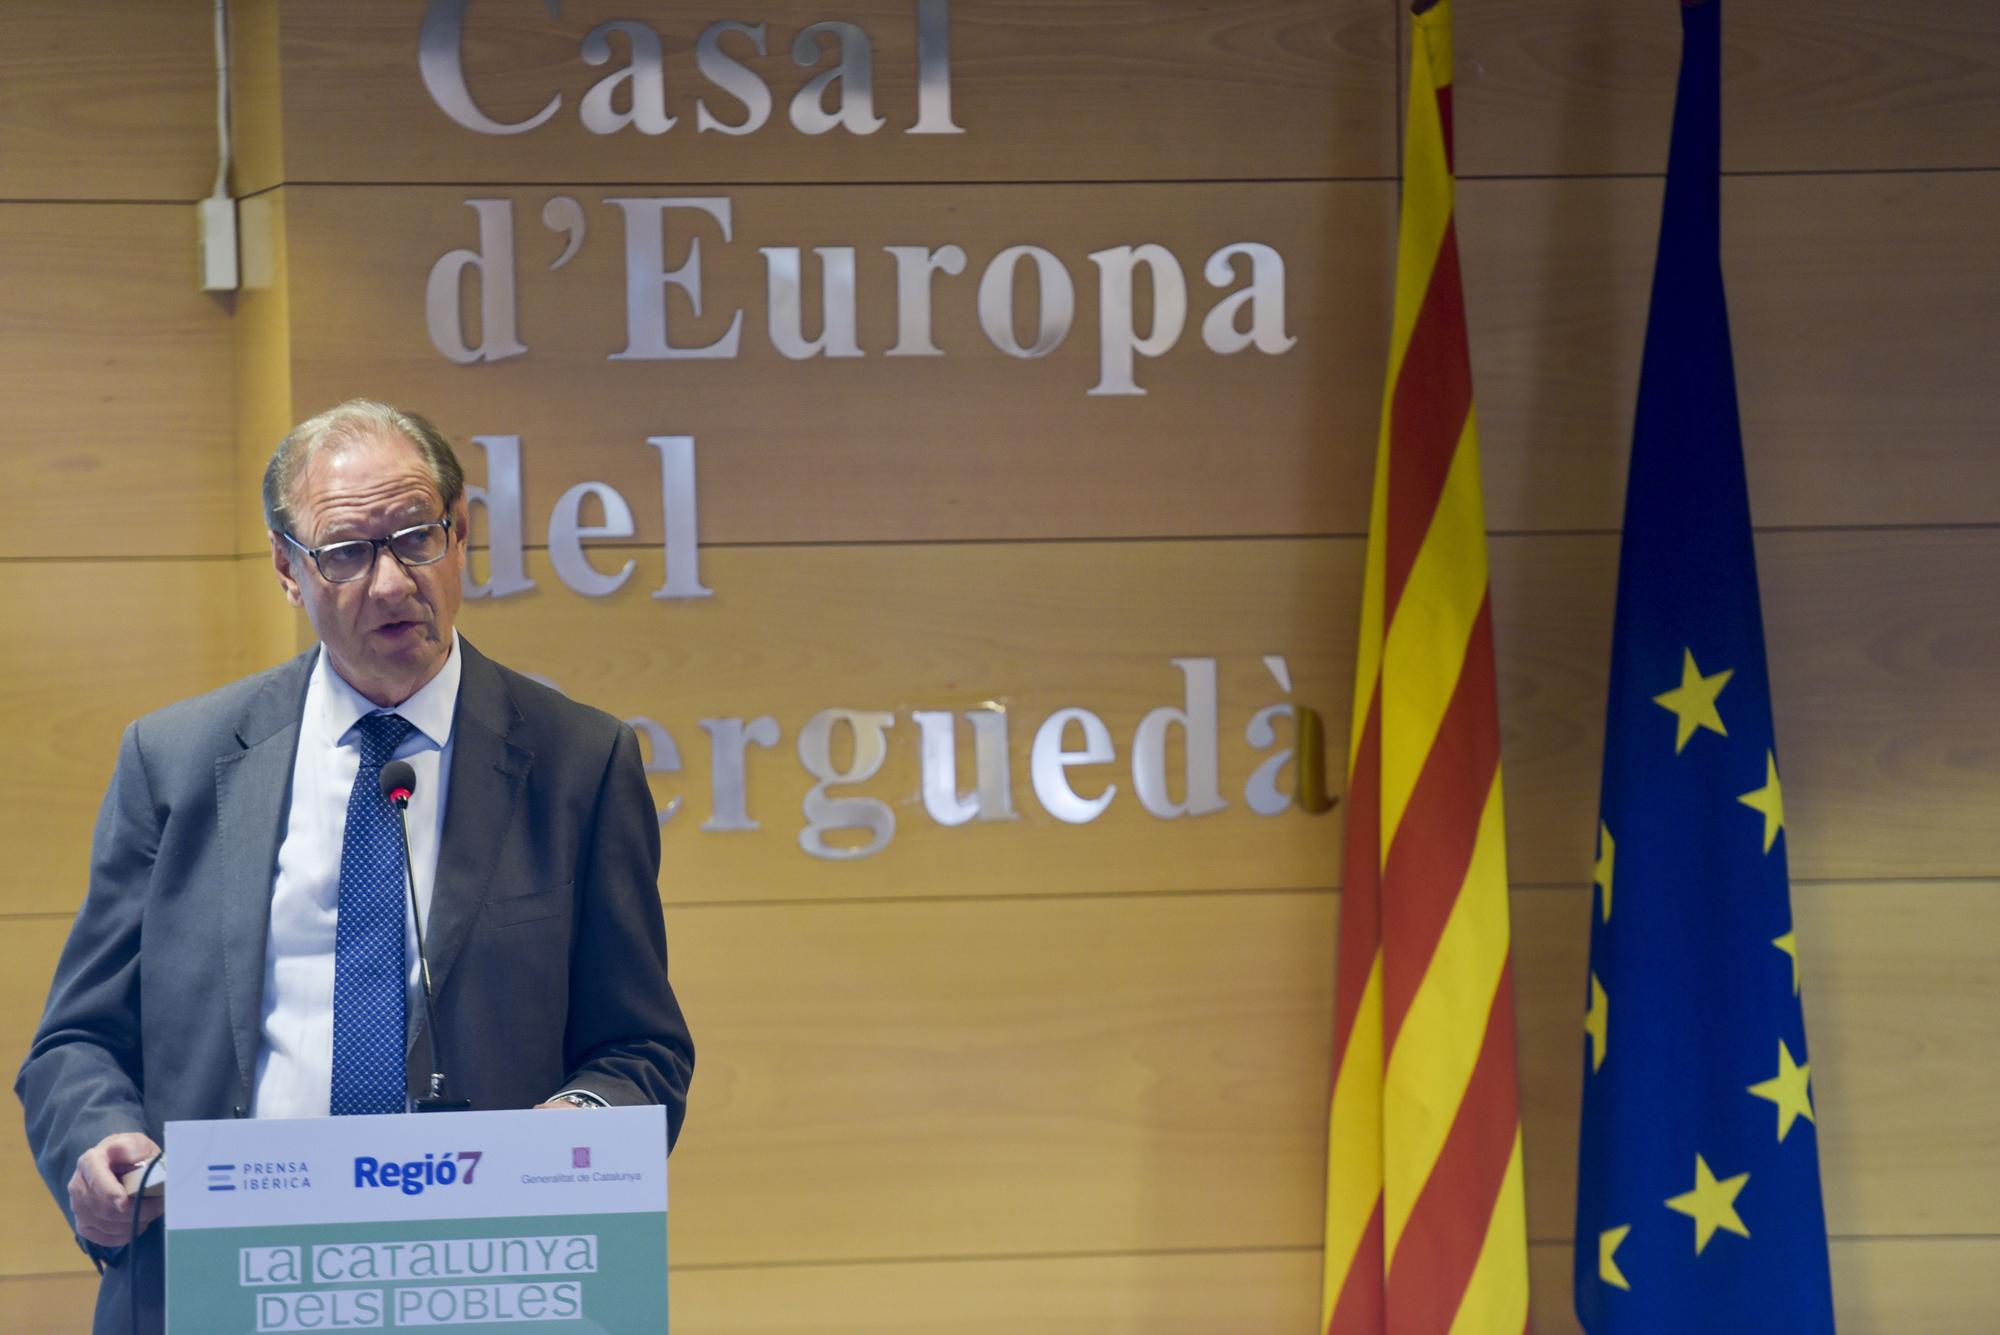 Regió7 debat a Berga sobre la Catalunya que es despobla